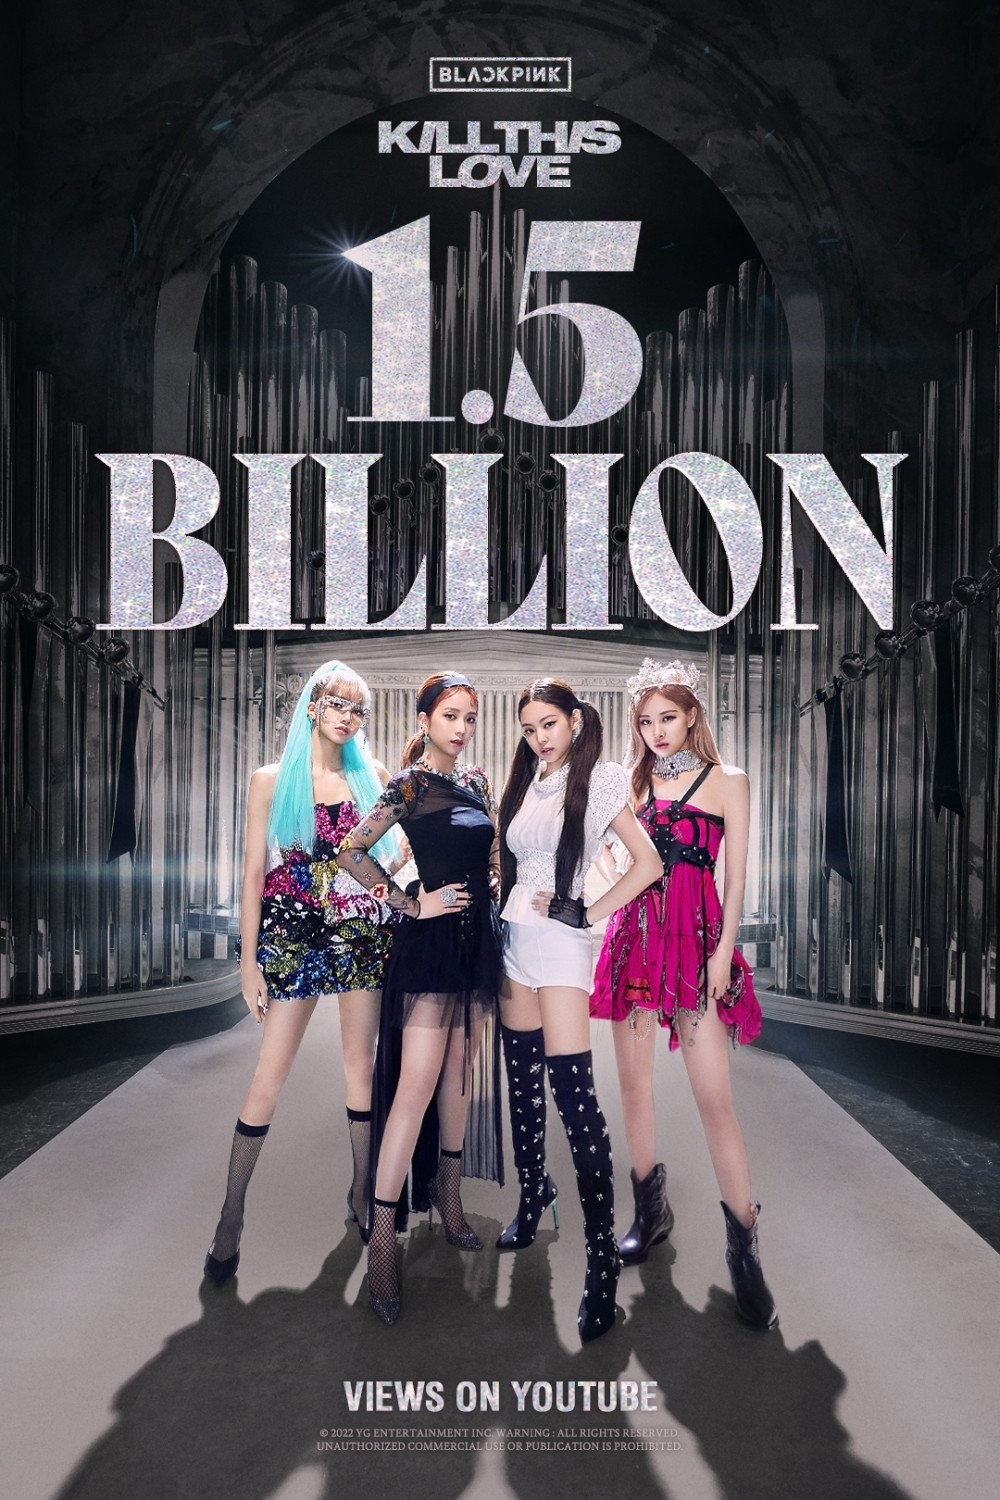 Sao Hàn ngày 26/1/2022: MV “Kill This Love” của BLACKPINK vượt mốc 1,5 tỷ lượt xem trên YouTube